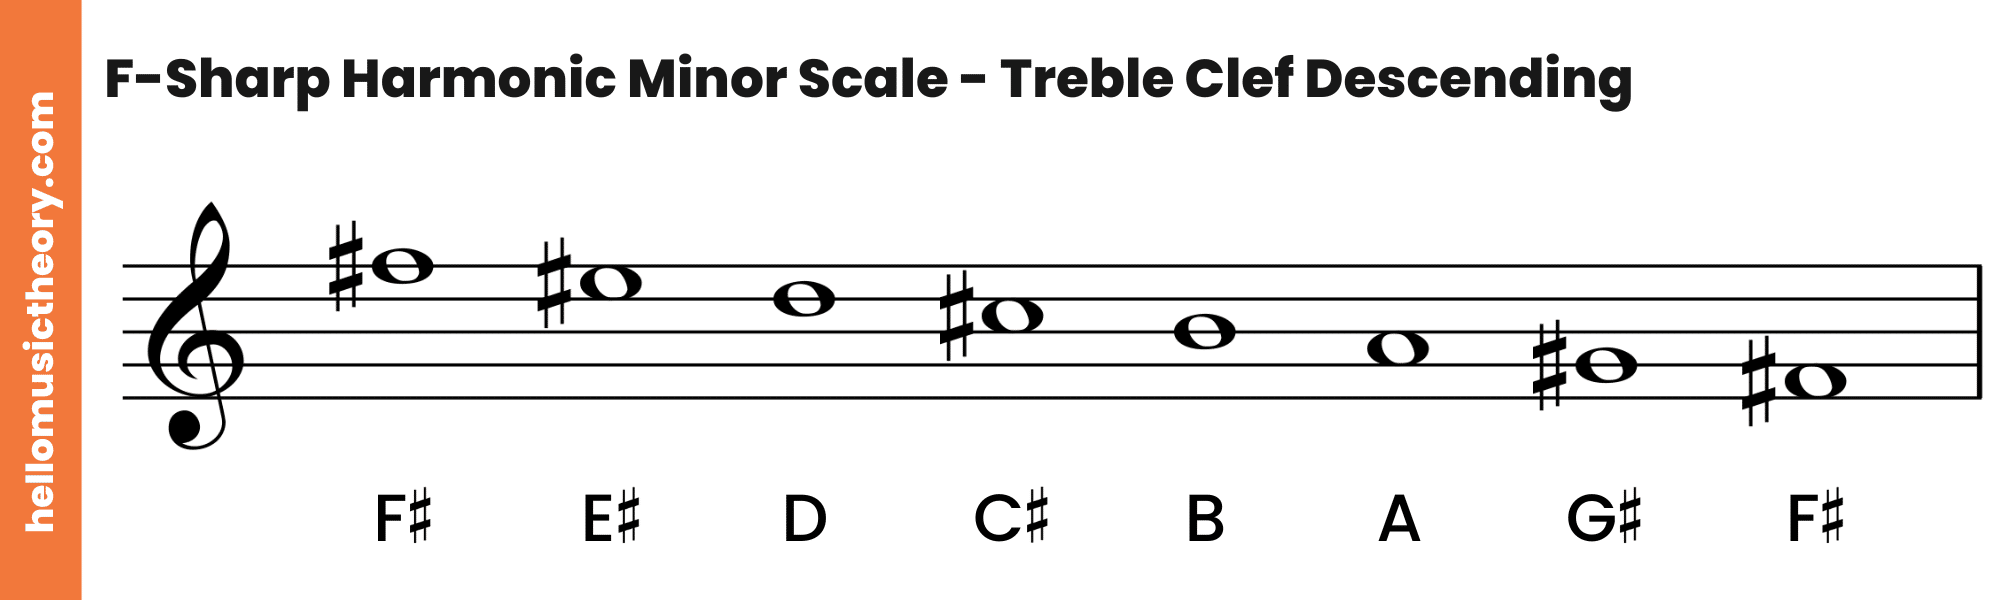 F-Sharp Harmonic Minor Scale Treble Clef Descending